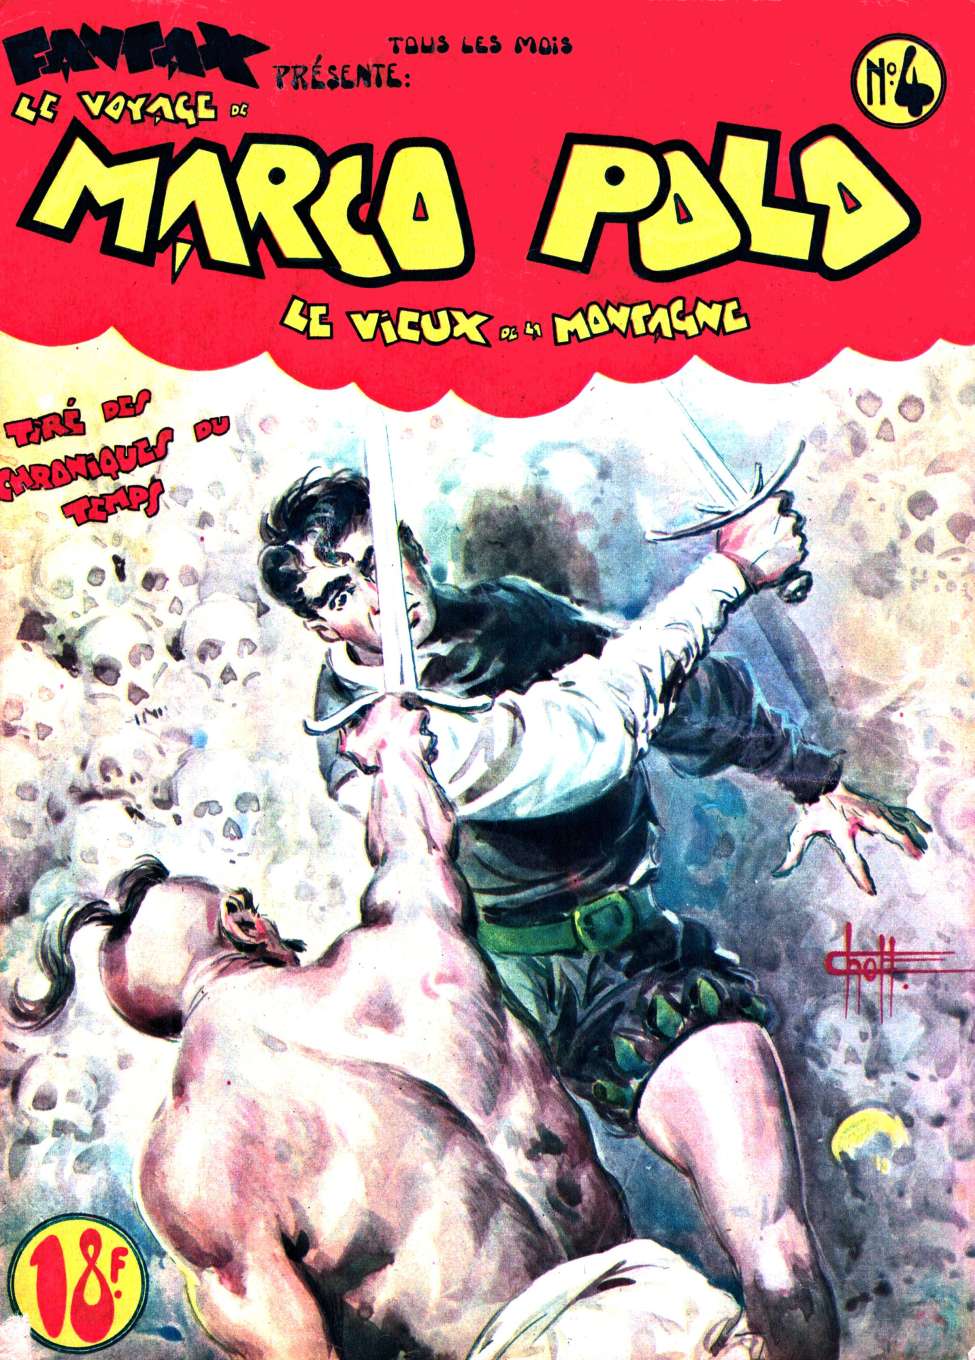 Comic Book Cover For Marco Polo 4 - Vieux de la Montagne